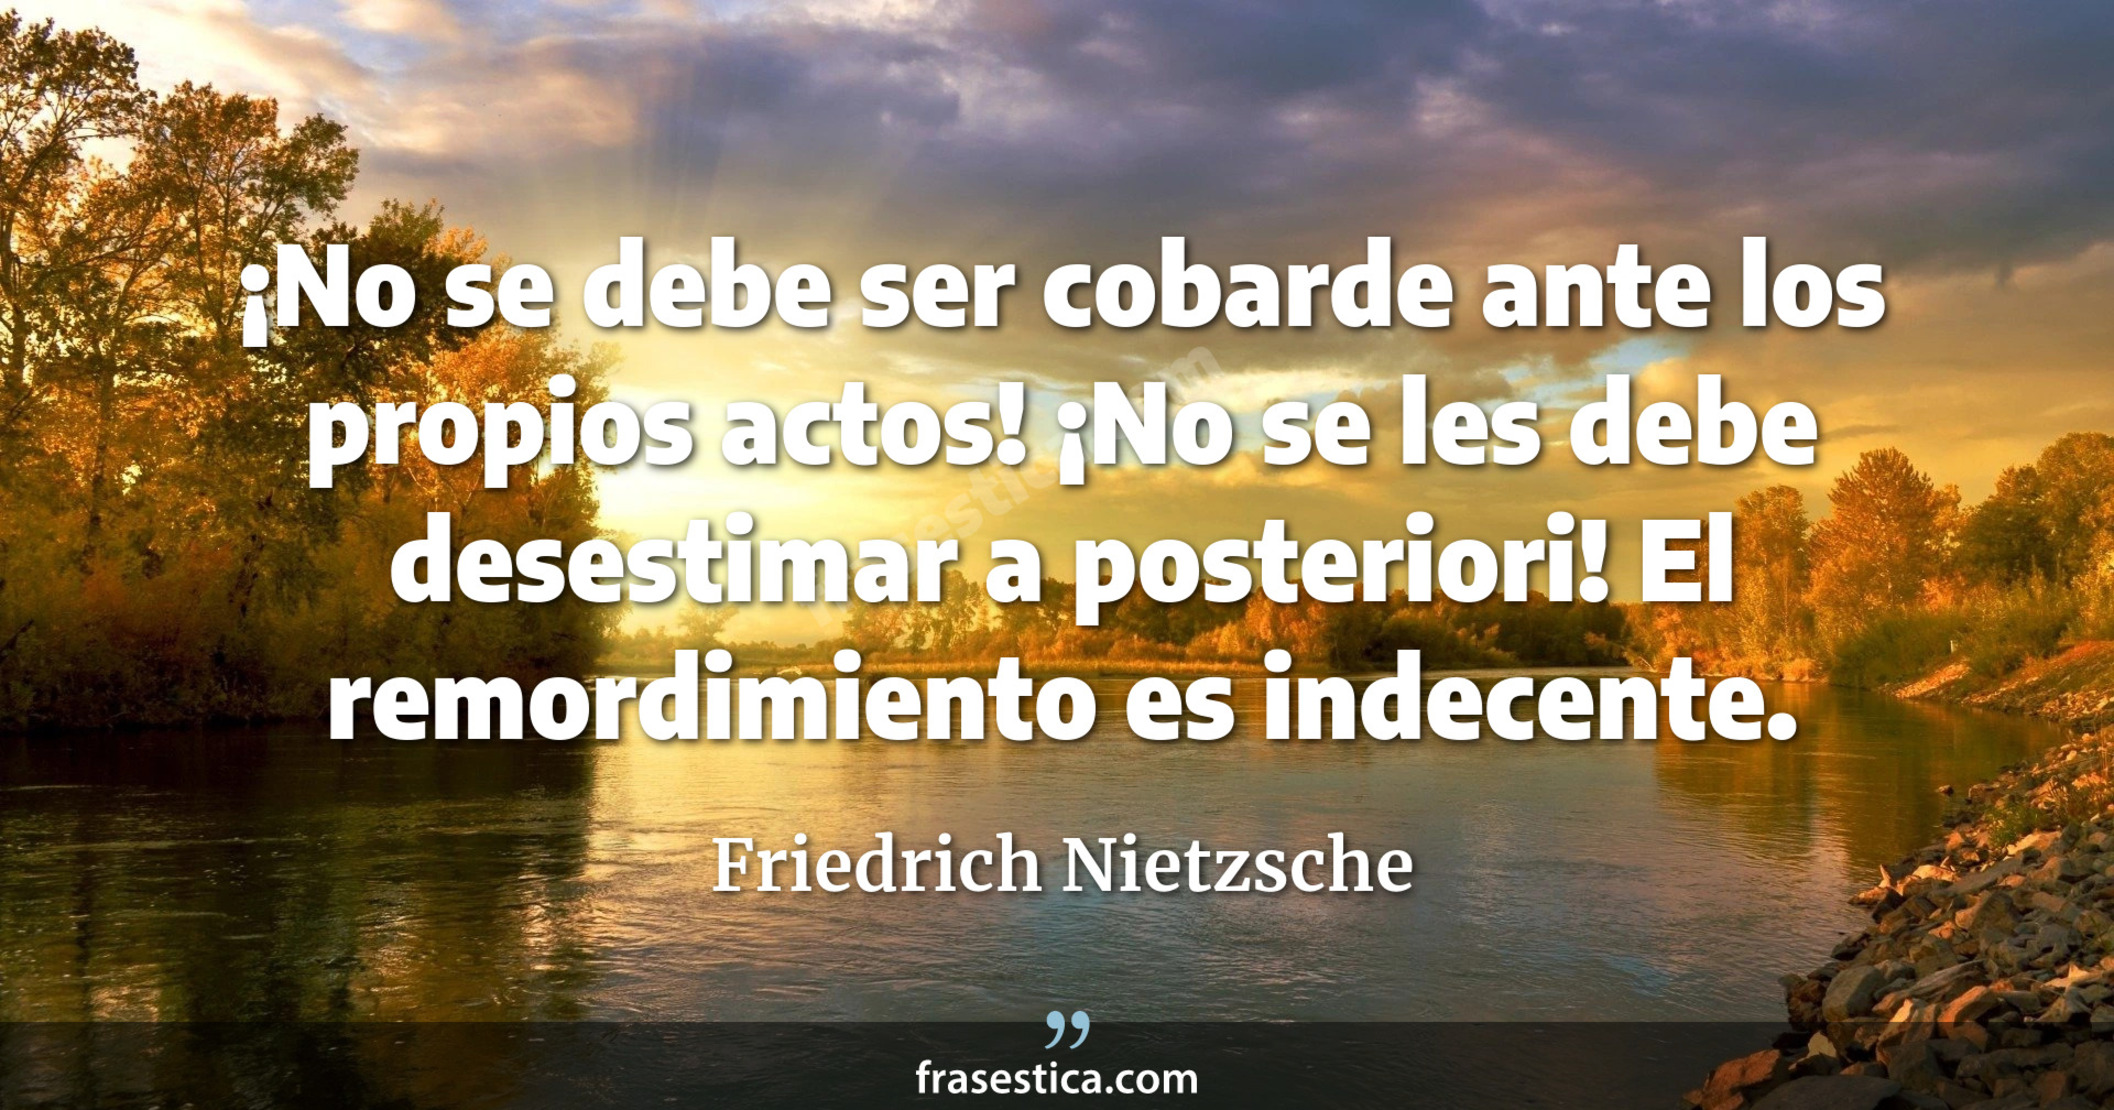 ¡No se debe ser cobarde ante los propios actos! ¡No se les debe desestimar a posteriori! El remordimiento es indecente. - Friedrich Nietzsche